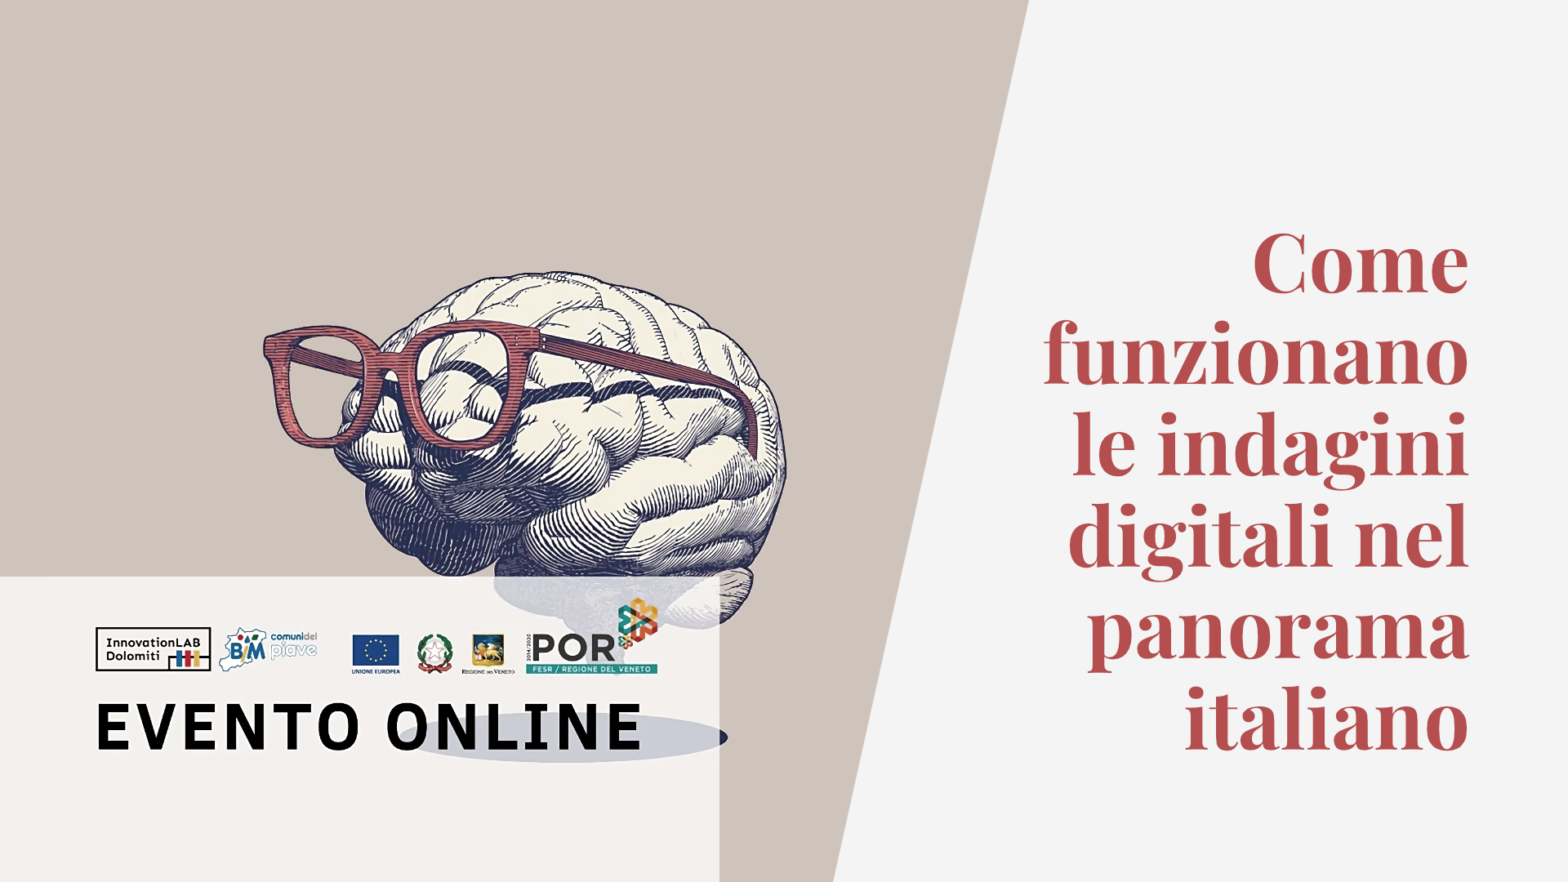 Evento online "Come funzionano le indagini digitali nel panorama italiano", con loghi delle istituzioni